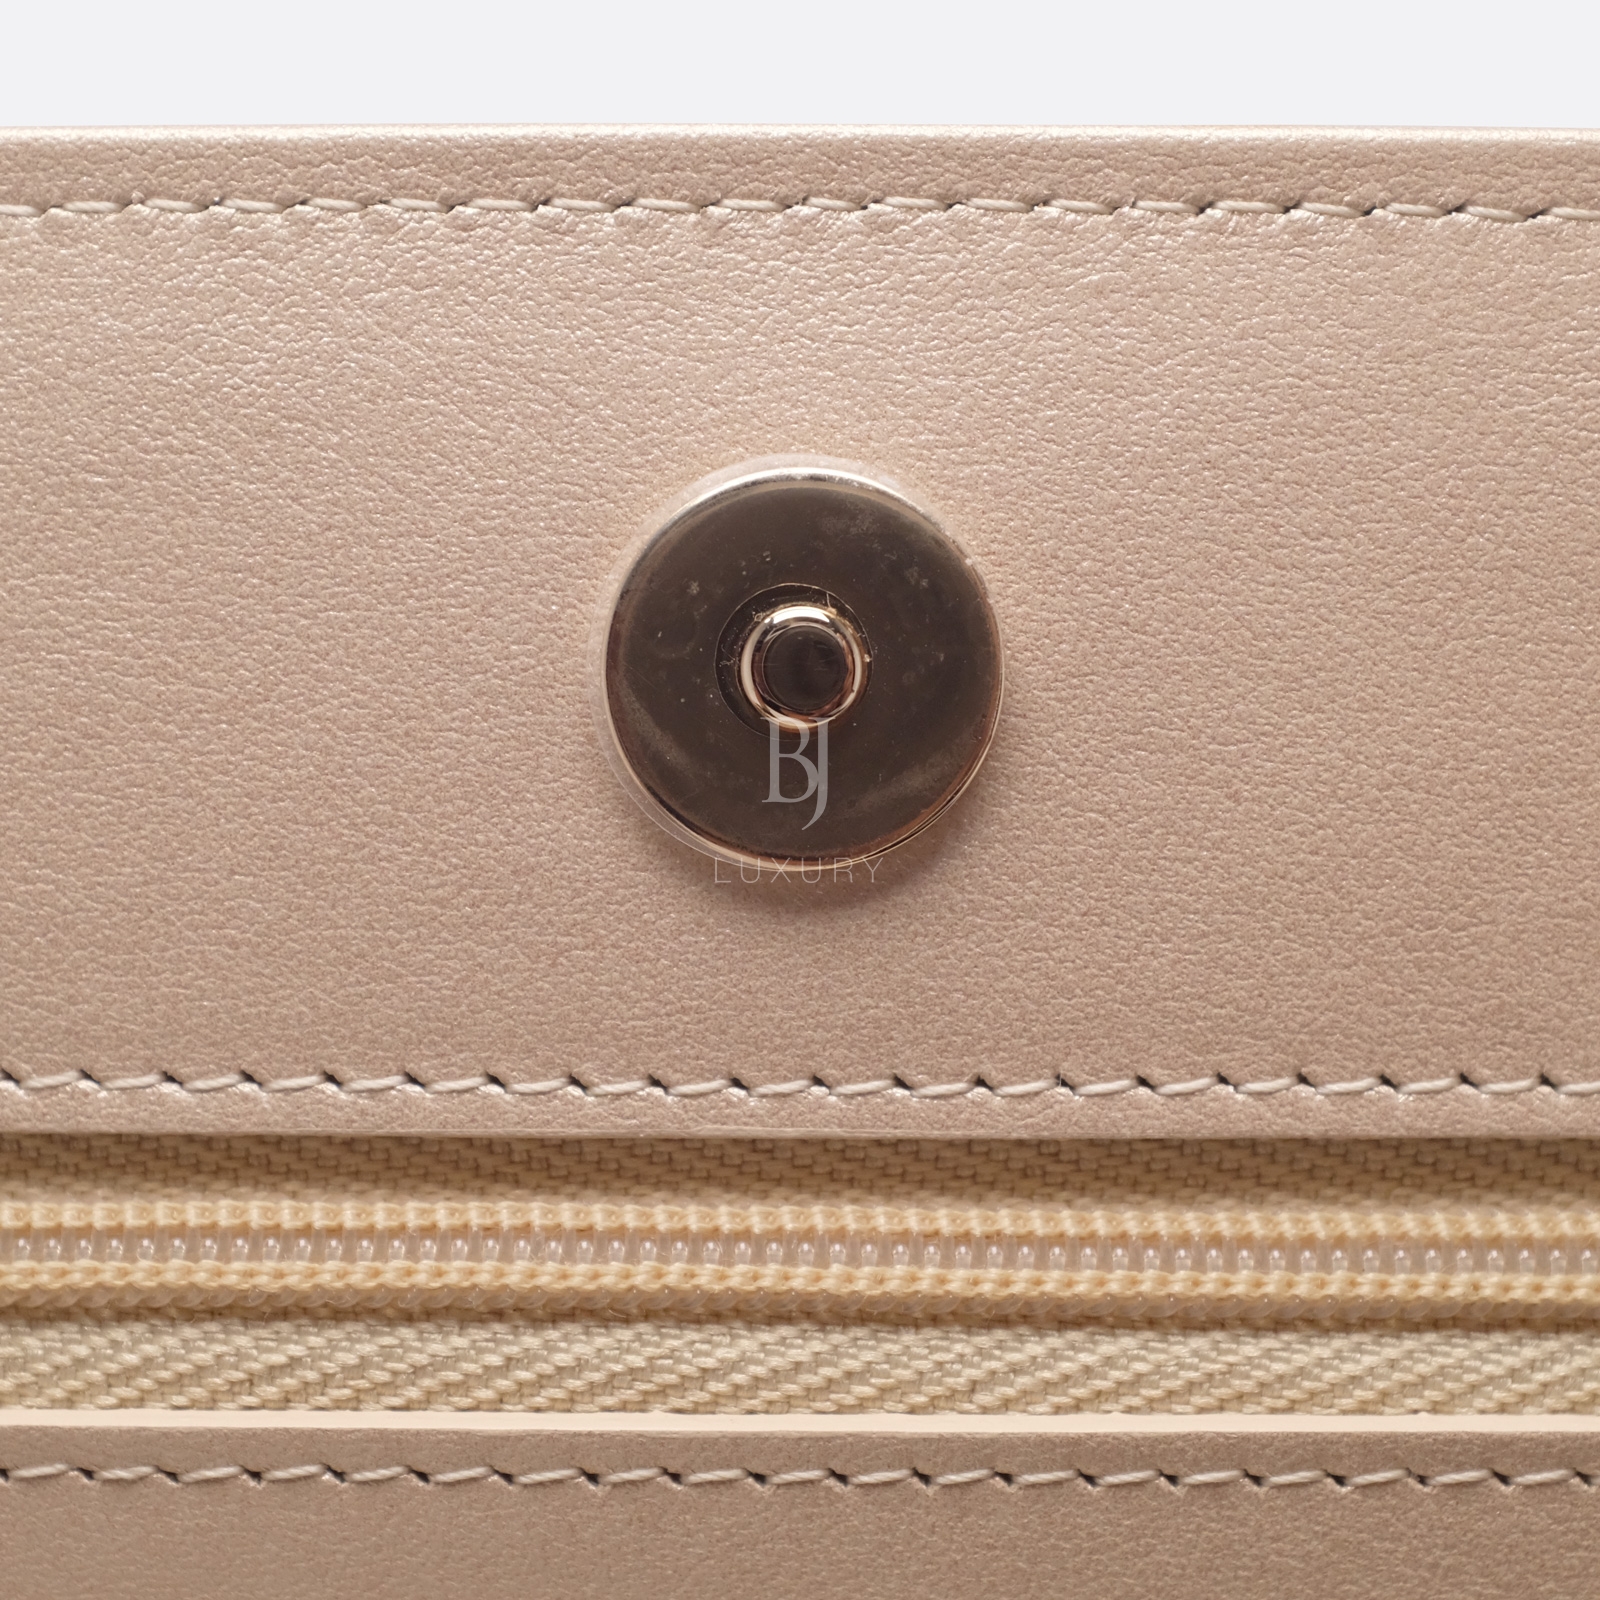 Chanel Wallet on Chain Mini Lambskin Light Gold BJ Luxury 14.jpg